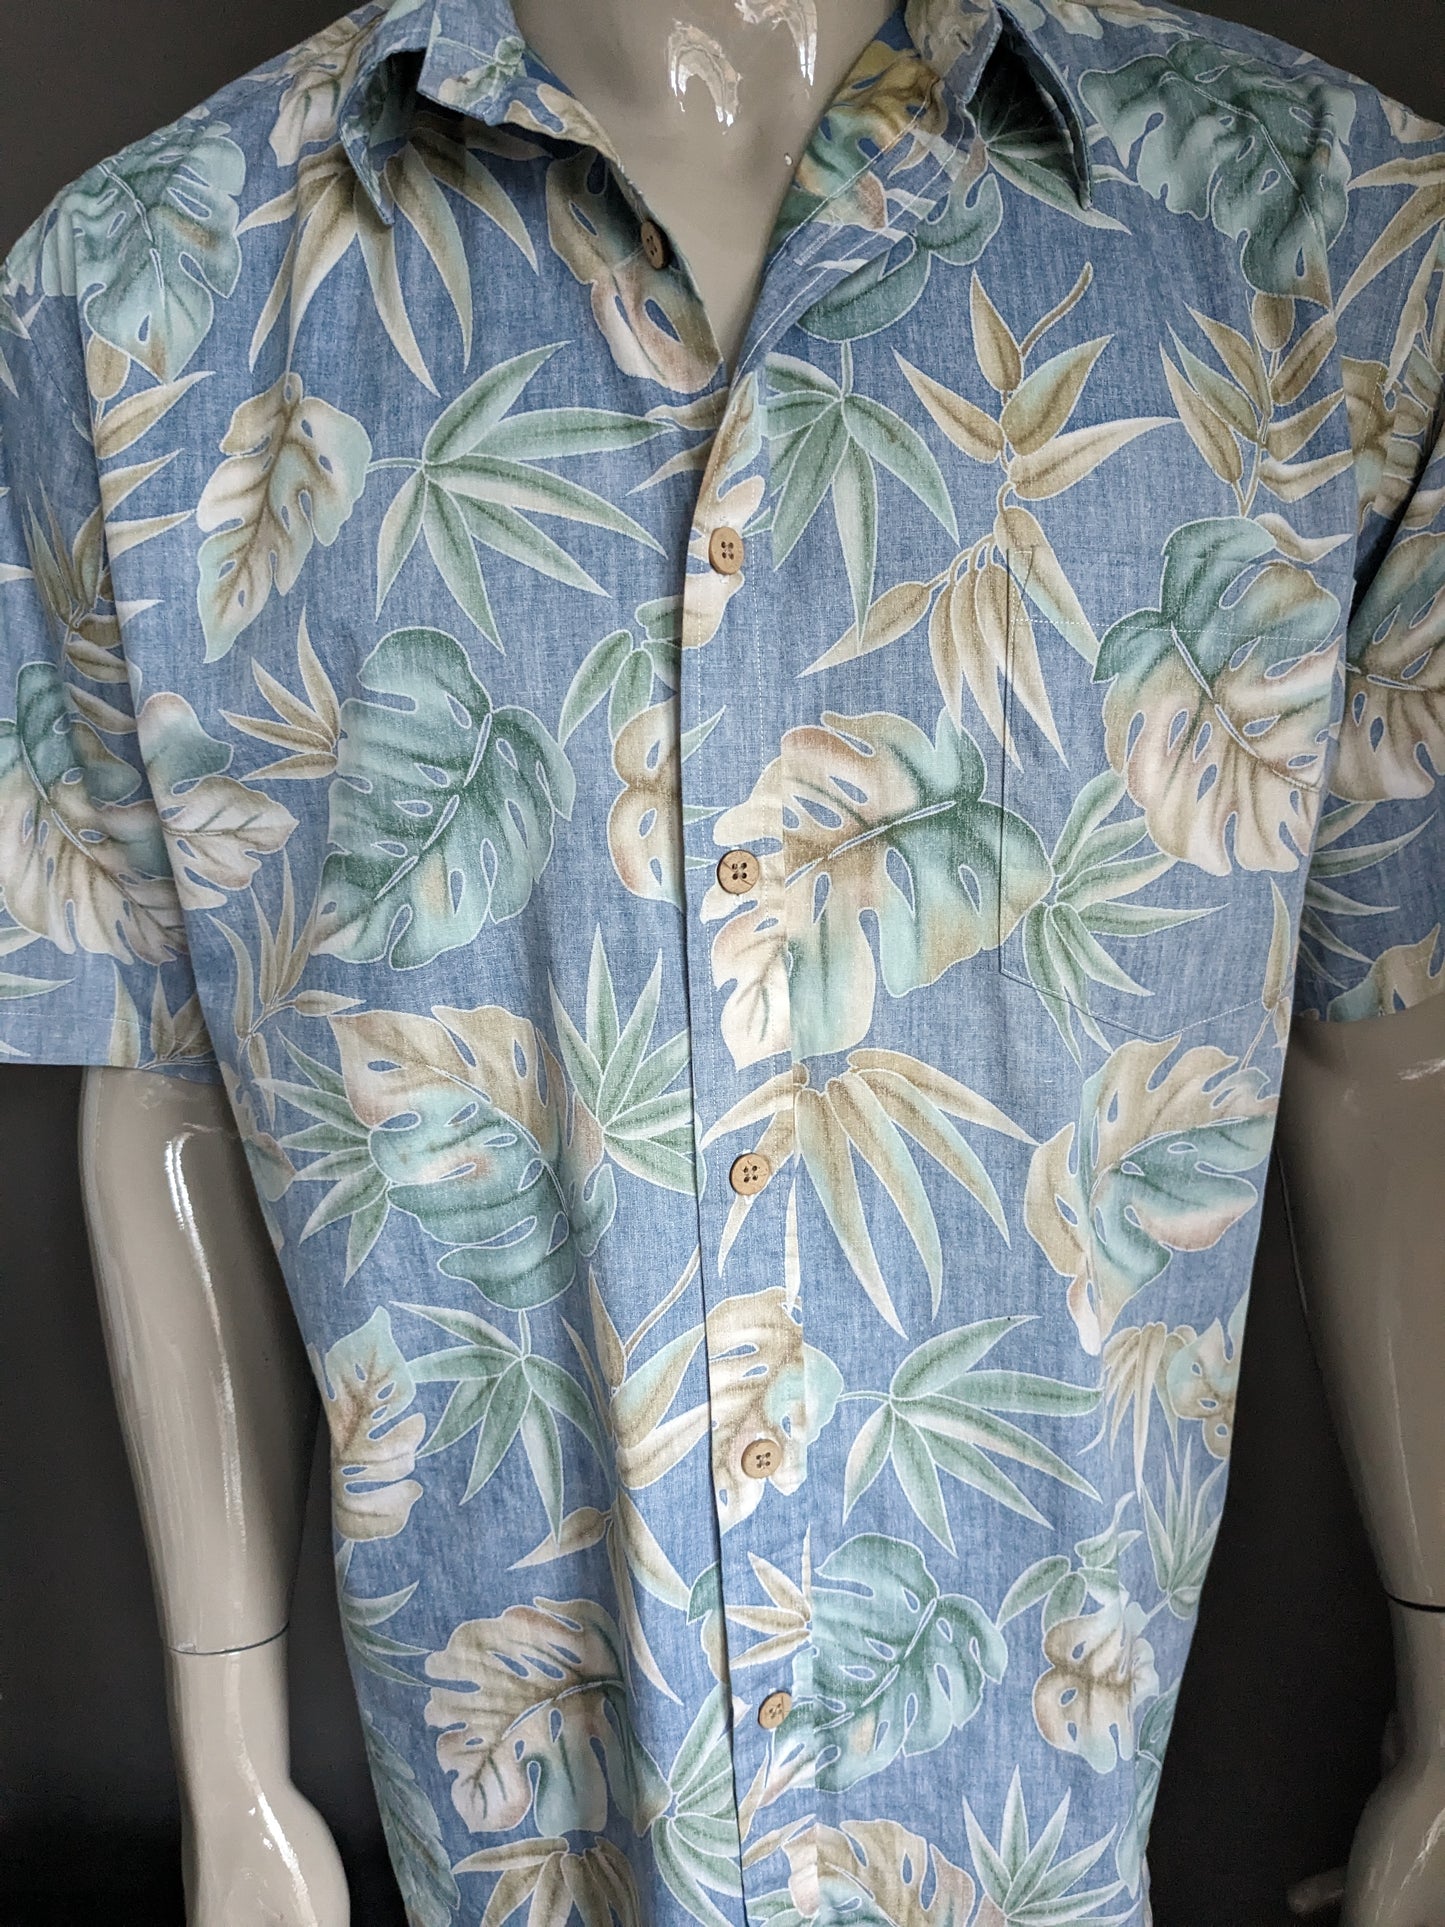 Cook Street Honolulu Original Hawaii Shirt Short Sleeve. Blue beige green leaf motif. Size L / XL.